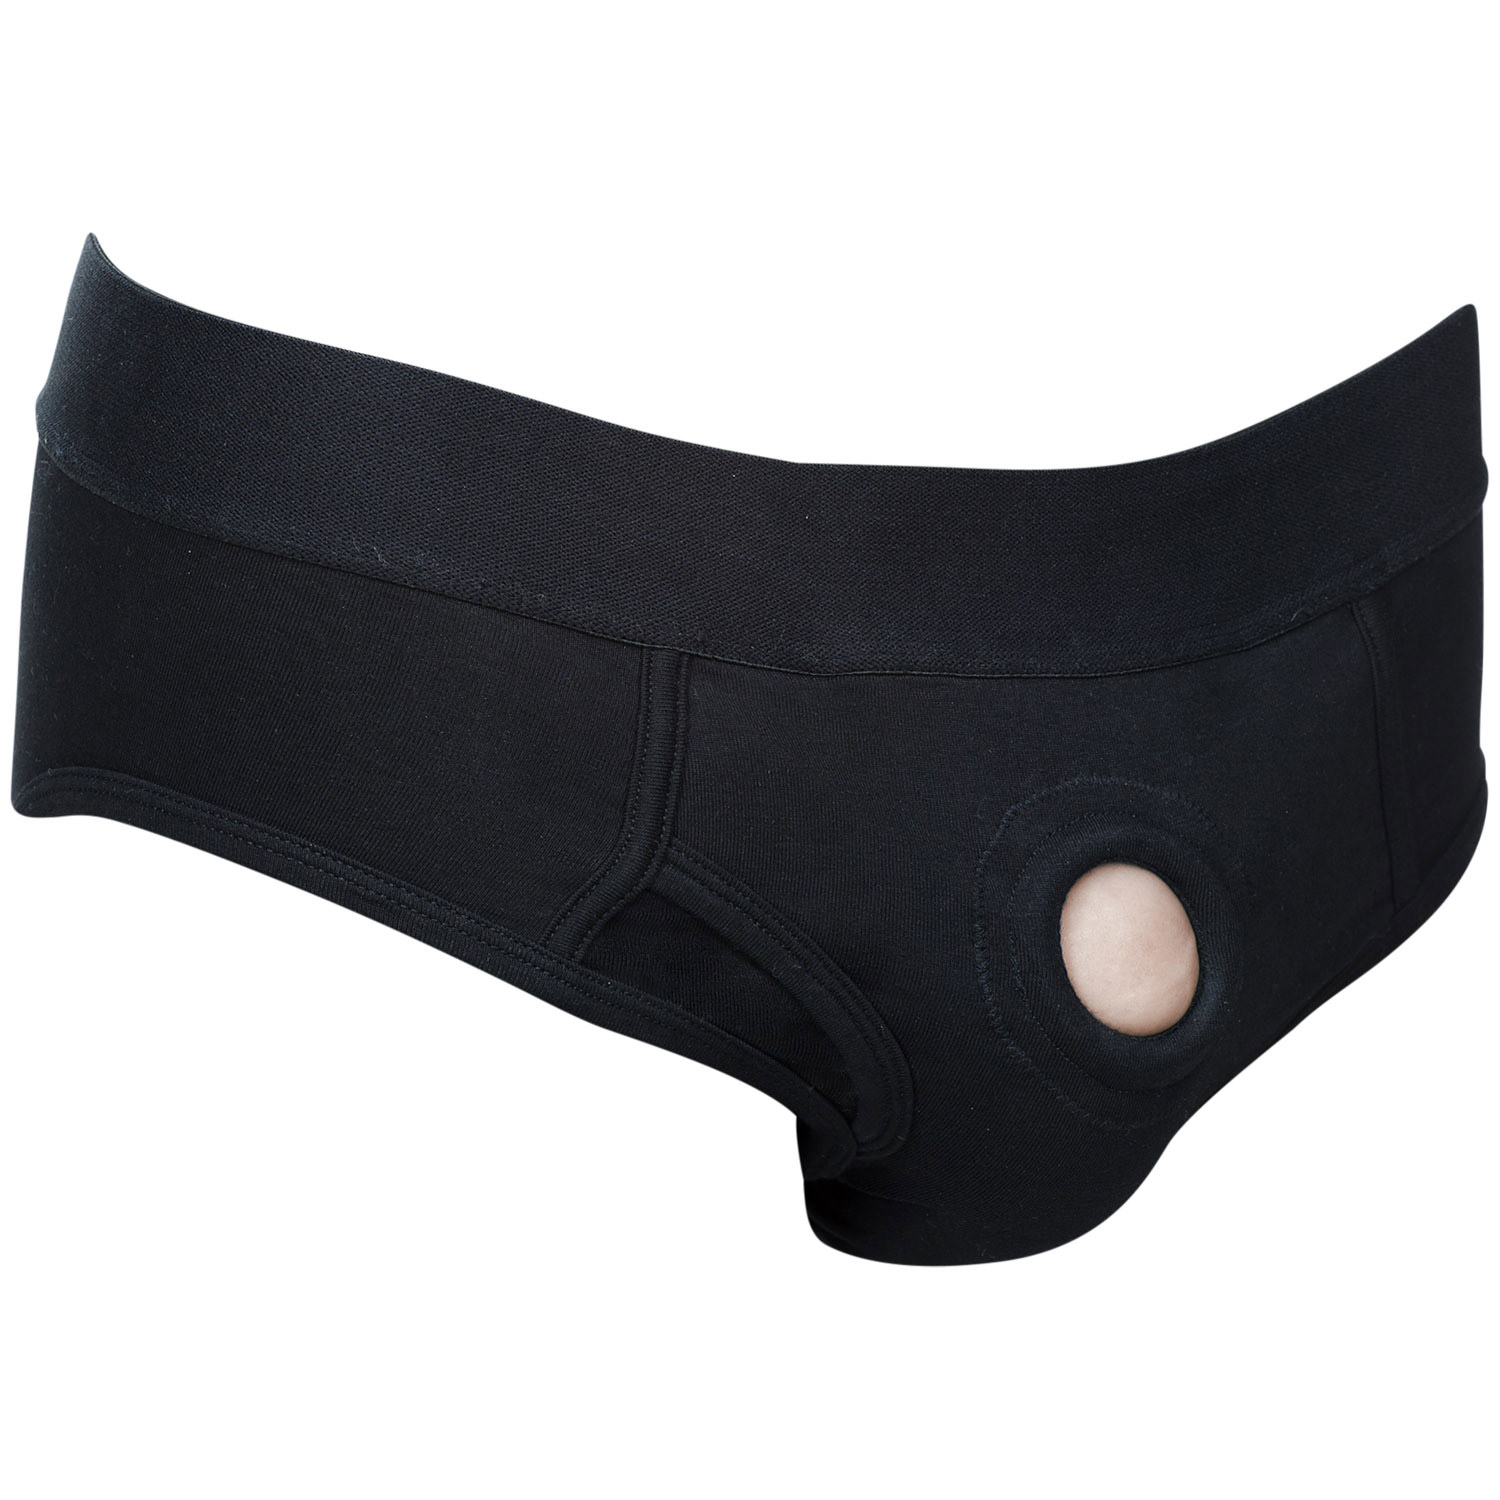 Calexotics Packer Gear Brief Harness - Svart - S | Favoriter//REA för kvinnor//Par//REA för Par//Strap-on//Strap-on Dildo//REA//Vibrerande Strap-on//Seledildos//Par Sexleksaker//Harness//CalExotics | Intimast